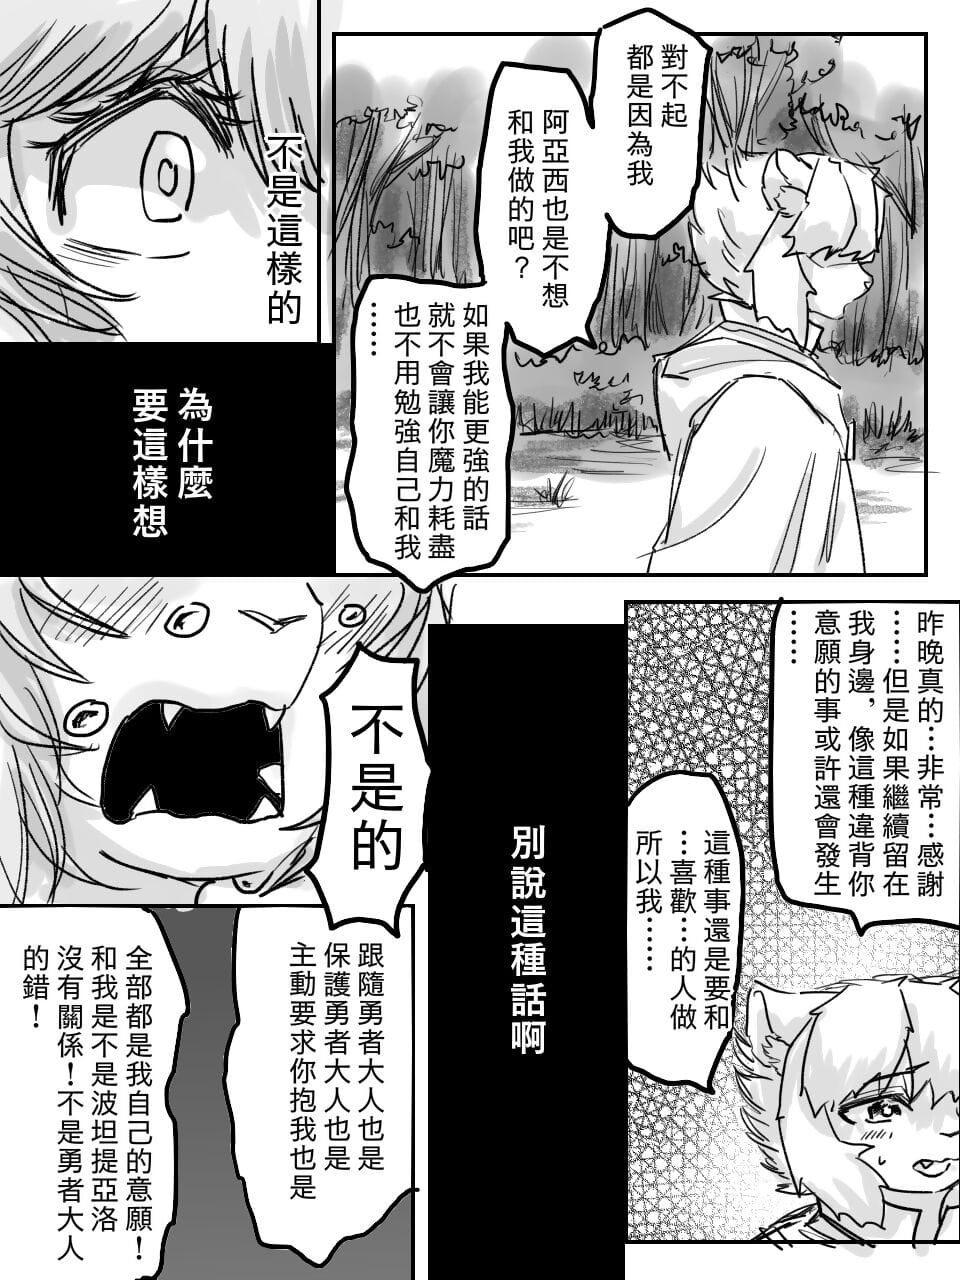 （teammate）勇者和法师露营的小故事 by:鬼流 часть 3 page 1